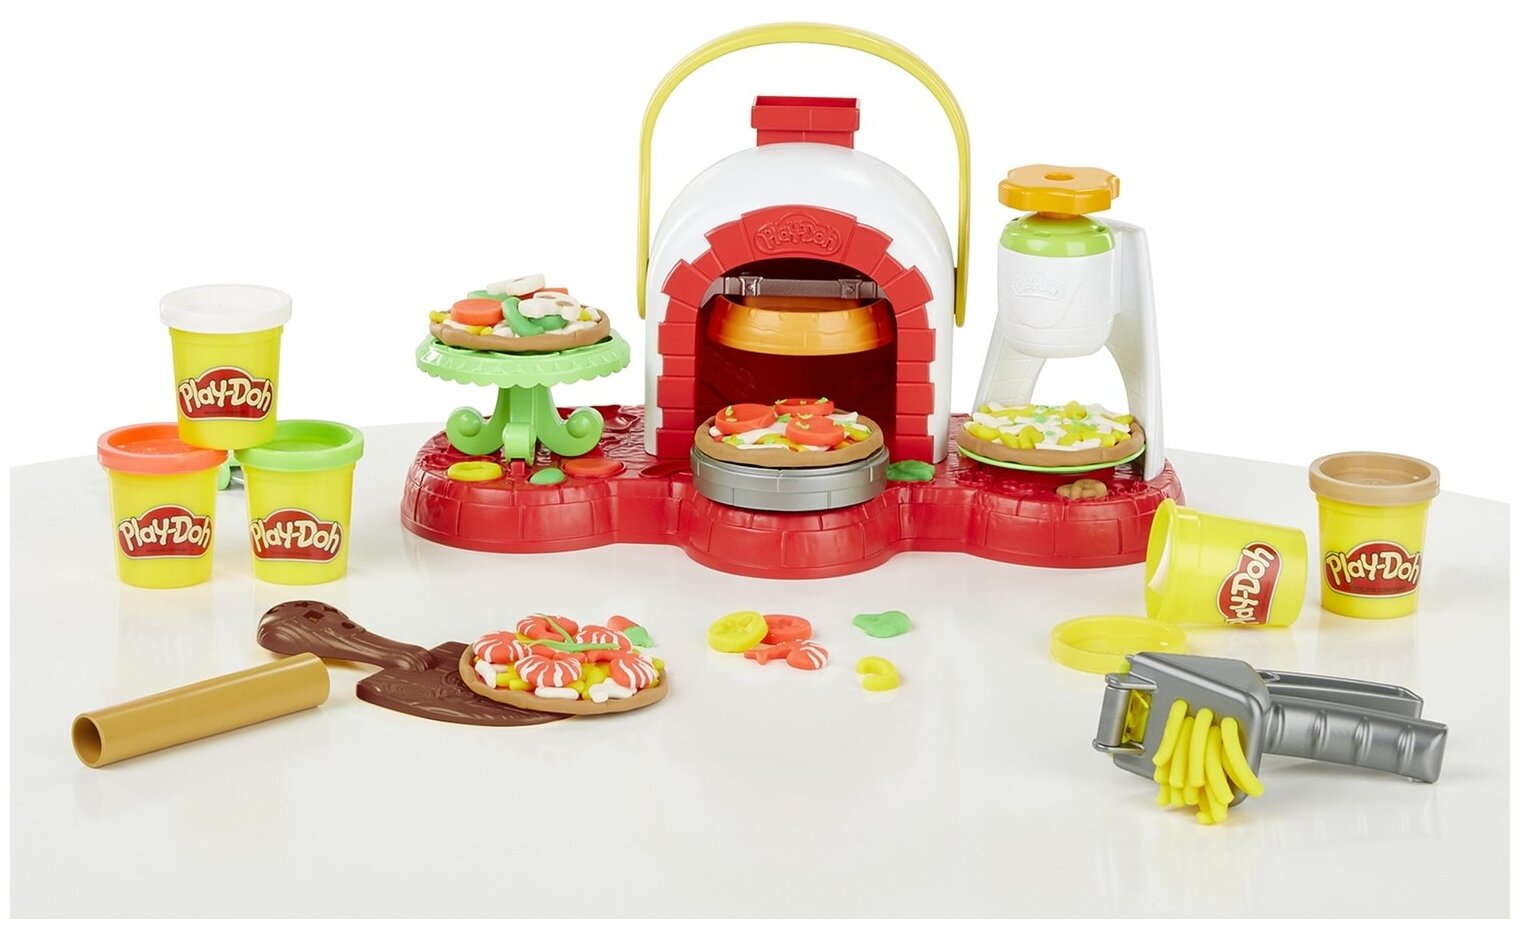 Игровые наборы и фигурки для детей Hasbro Play-Doh - фото №3